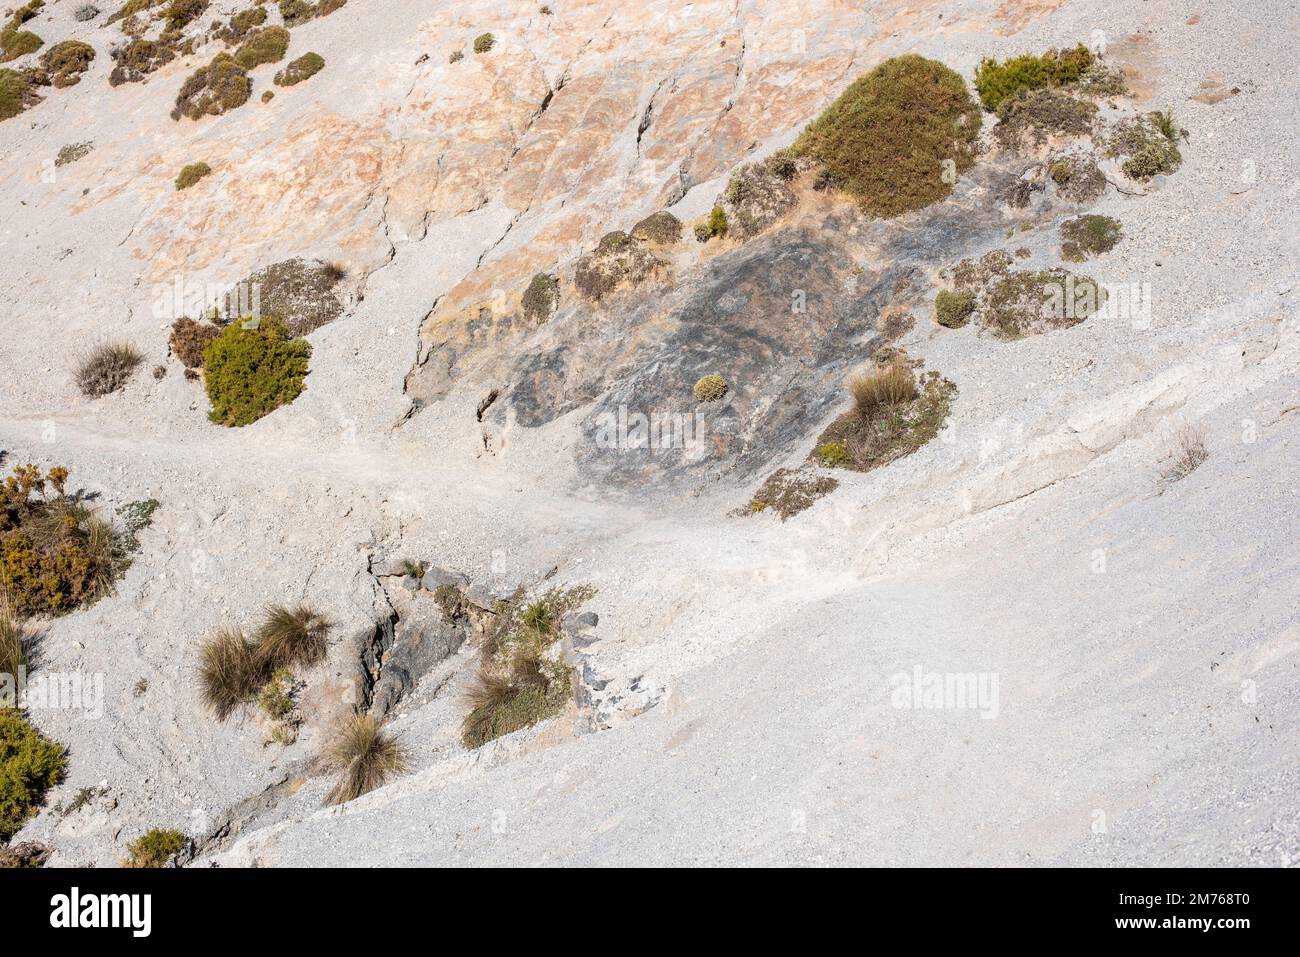 Arenales del Trevenque en el Parque Nacional de Sierra Nevada, Granada España Stockfoto